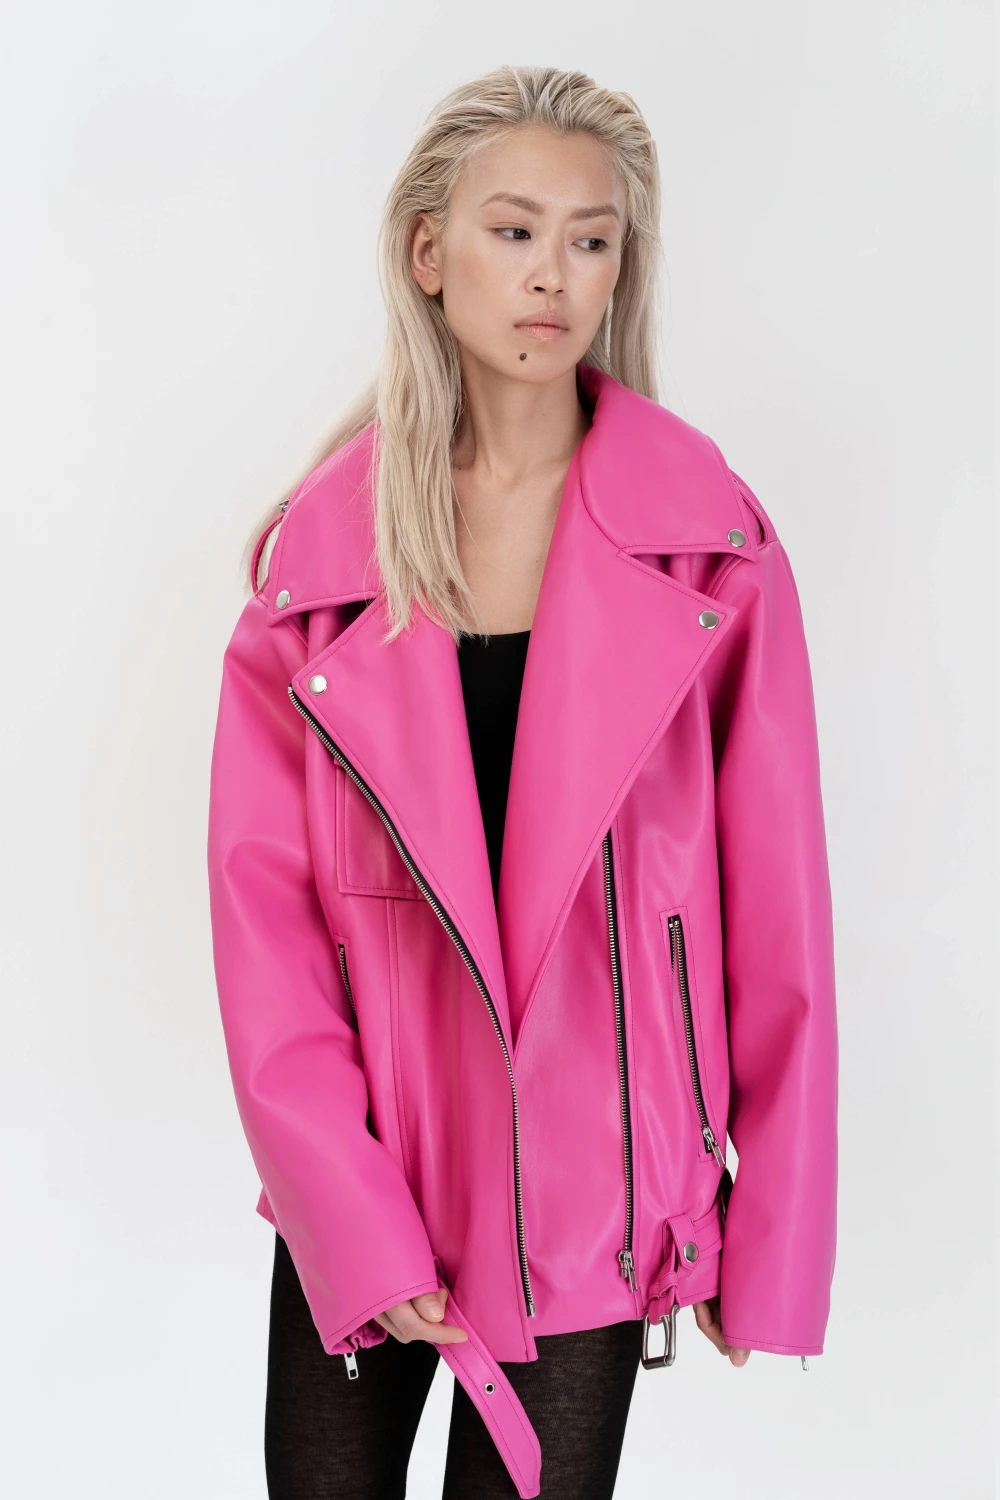 biker jacket in pink color